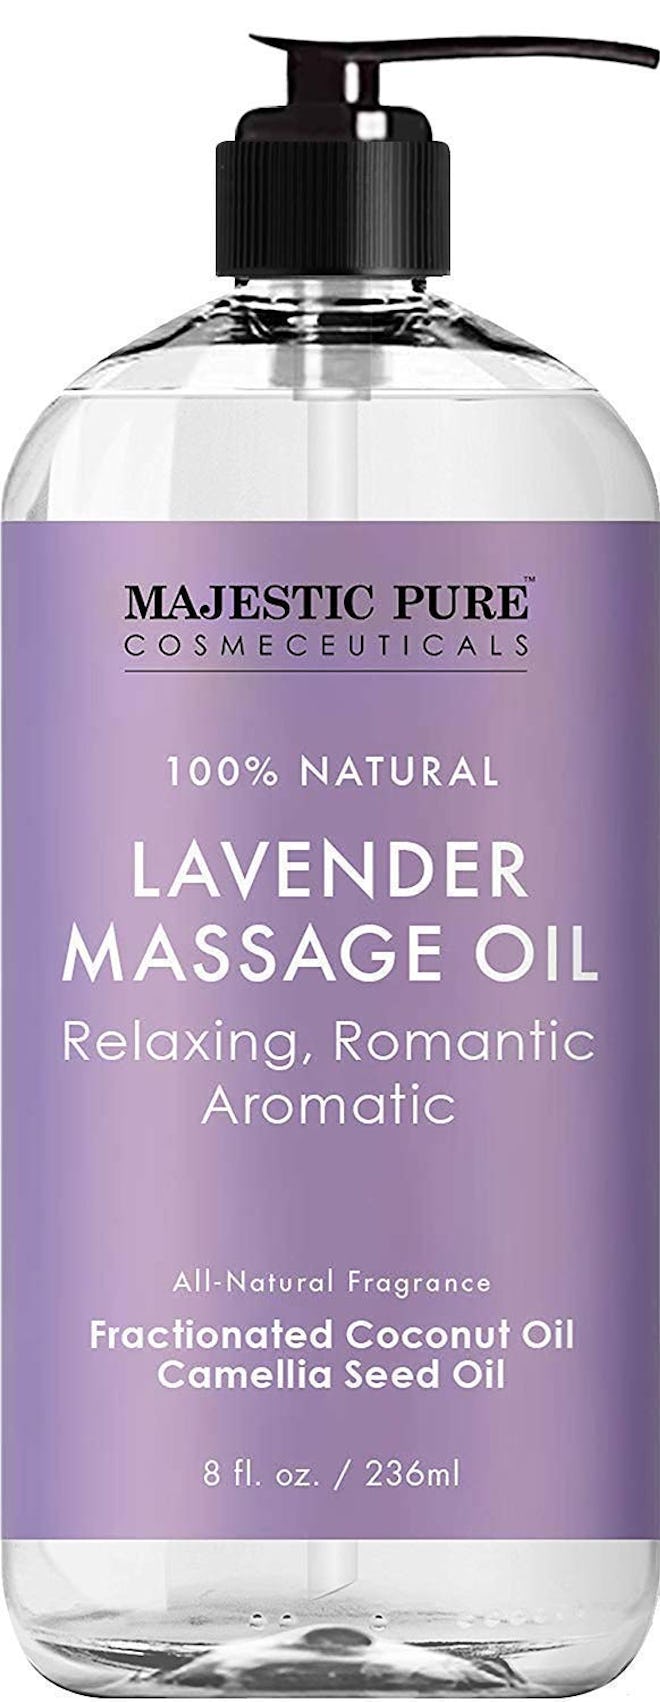 Majestic Pure Lavender Massage Oil